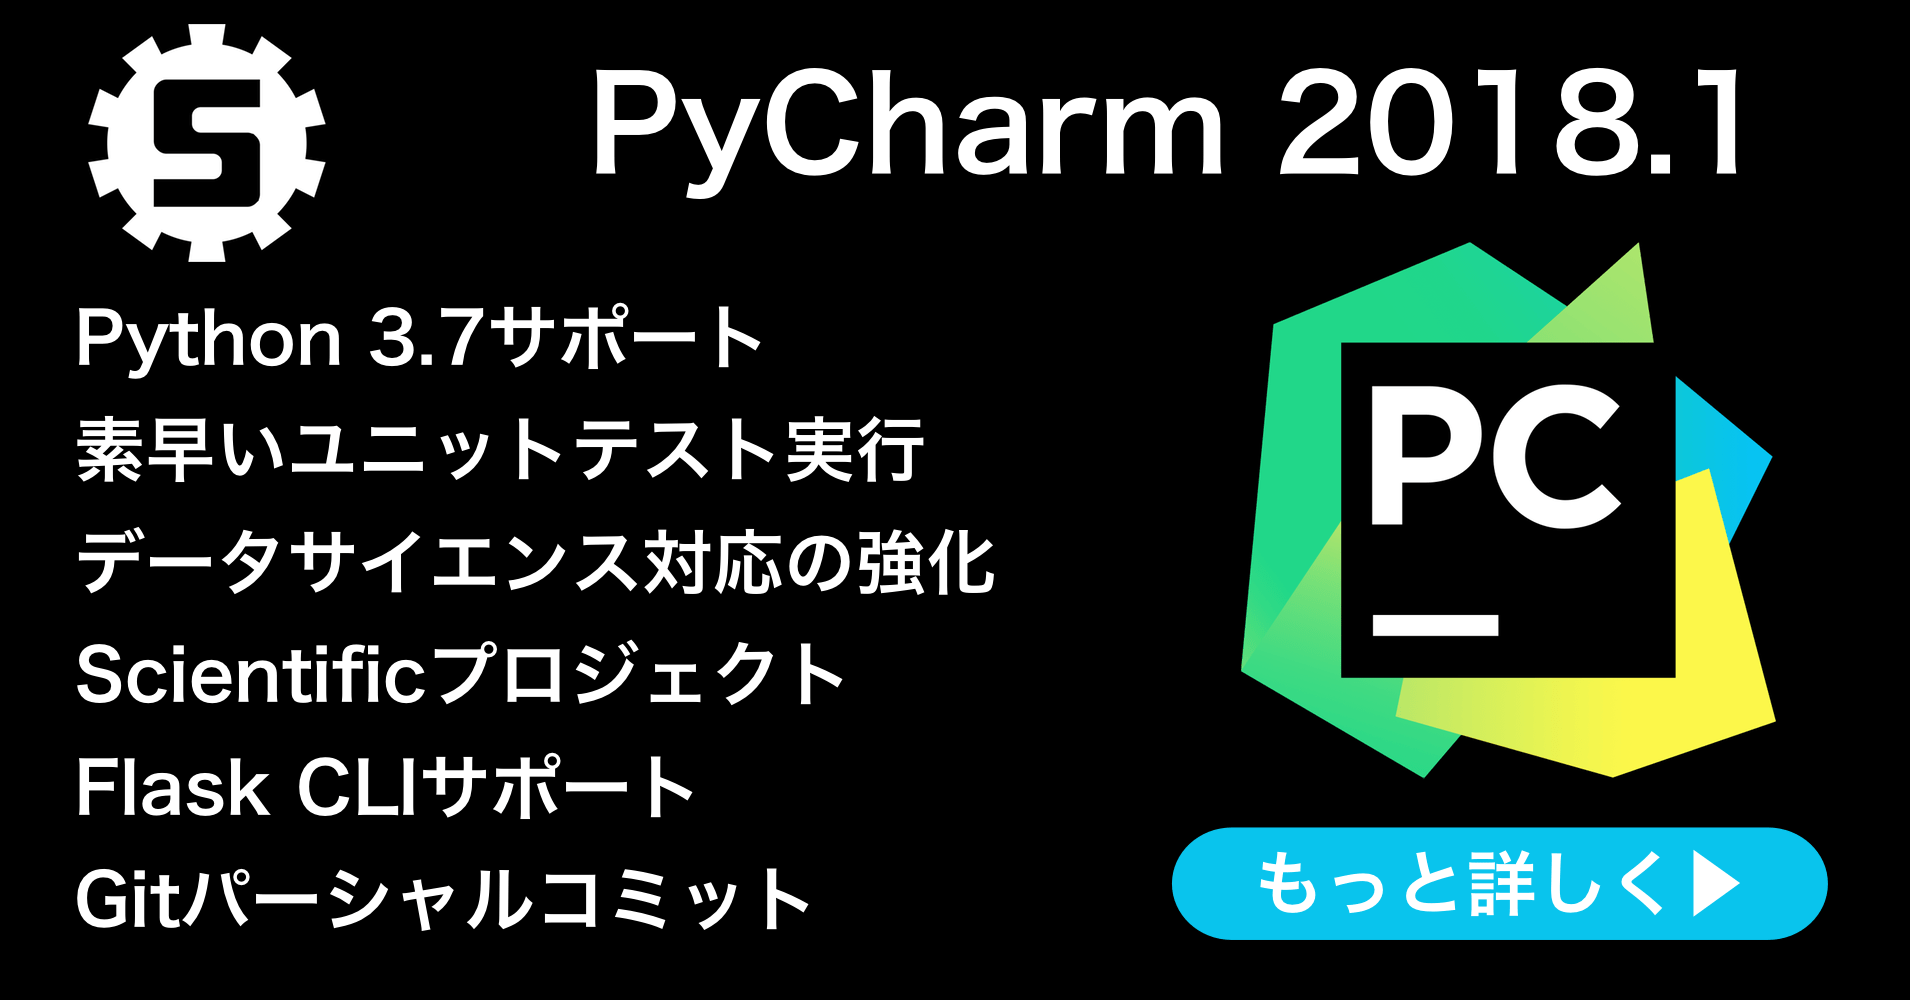 PyCharm 2018.1リリース